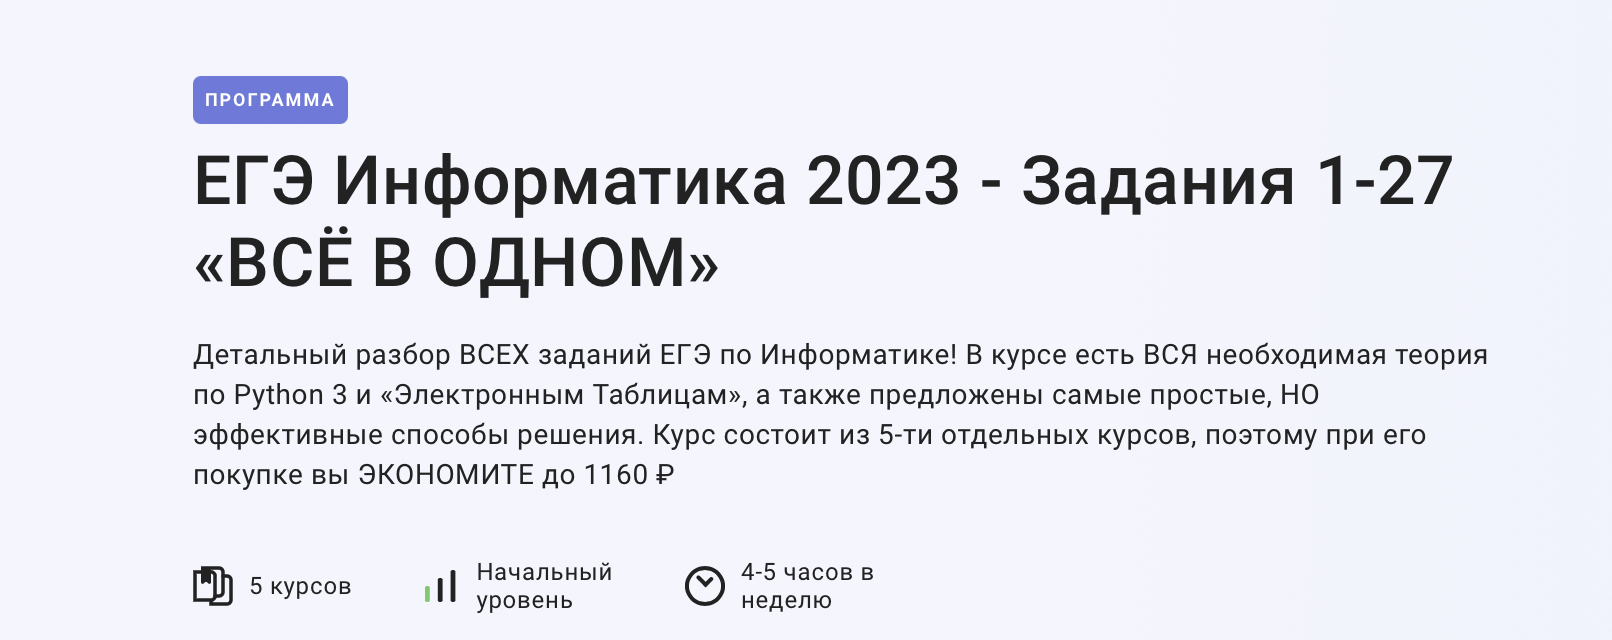 Егэ информатика 2023 решения. Задания ЕГЭ по информатике 2023. Изменения в ЕГЭ по информатике 2023. Продолжительность ЕГЭ по информатике 2023. 11 Задание ЕГЭ Информатика 2023.